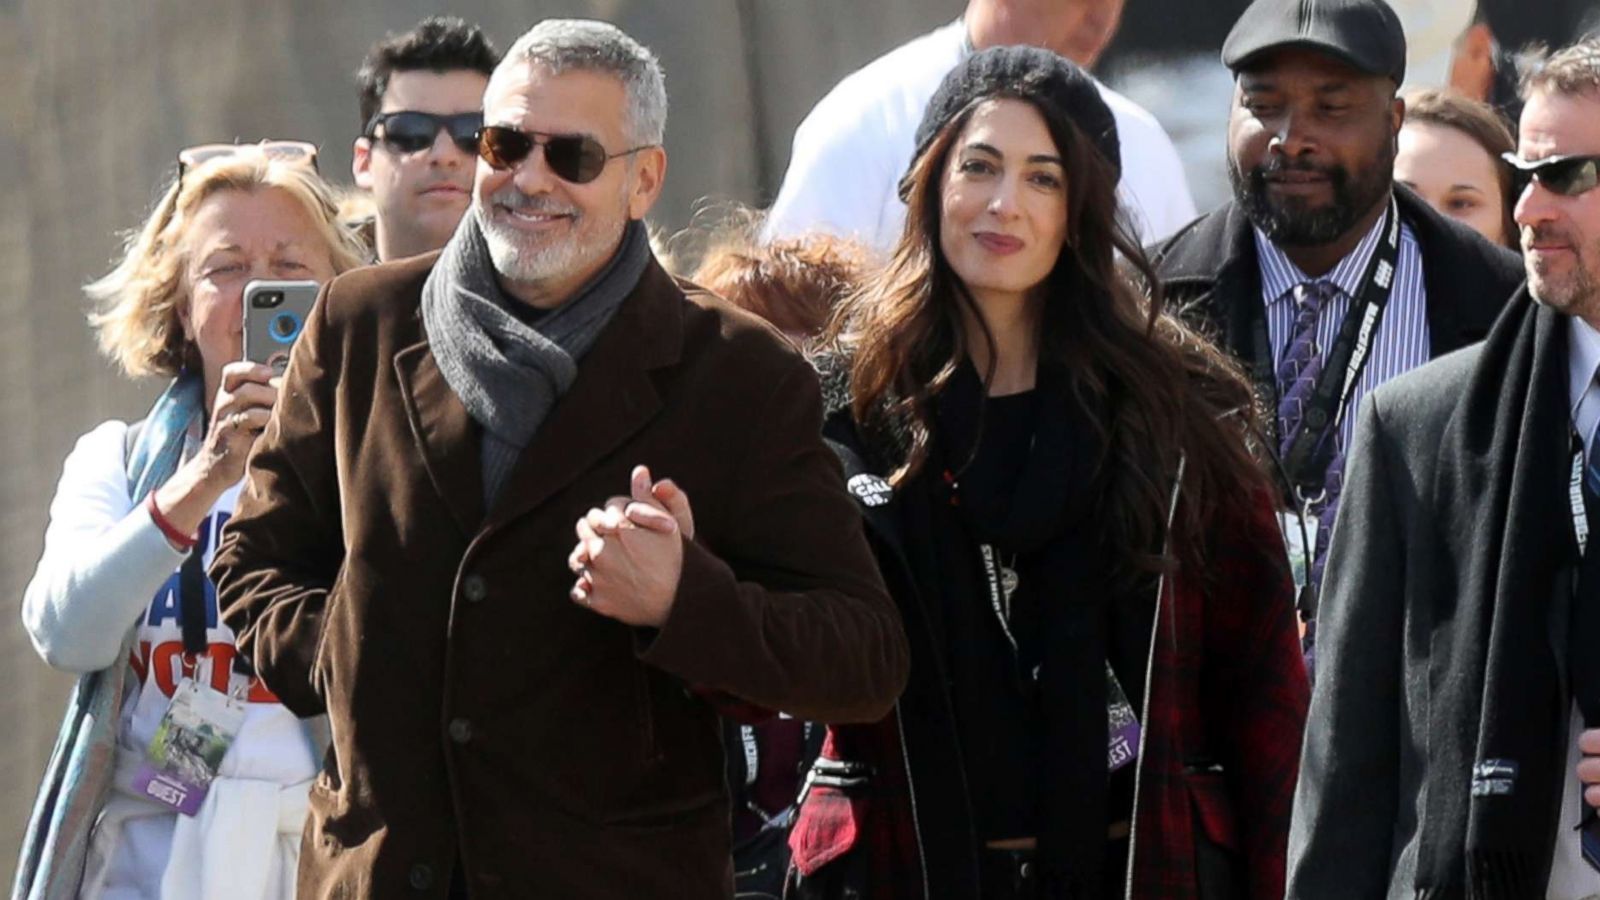 4. George Clooney